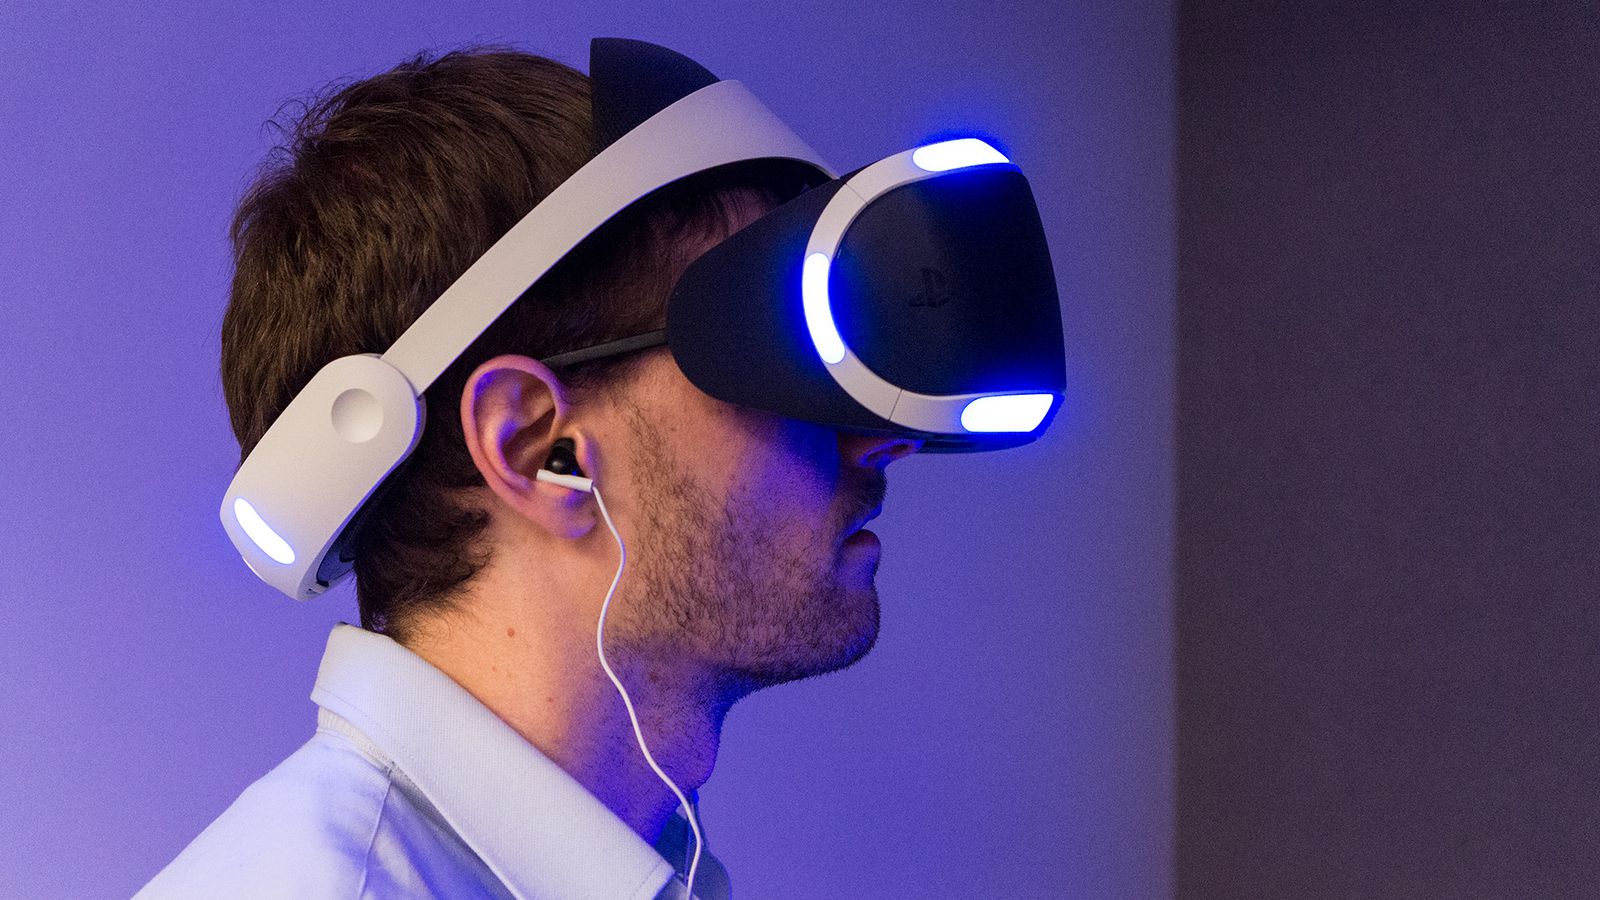 PlayStation VR – доступная виртуальная реальность!